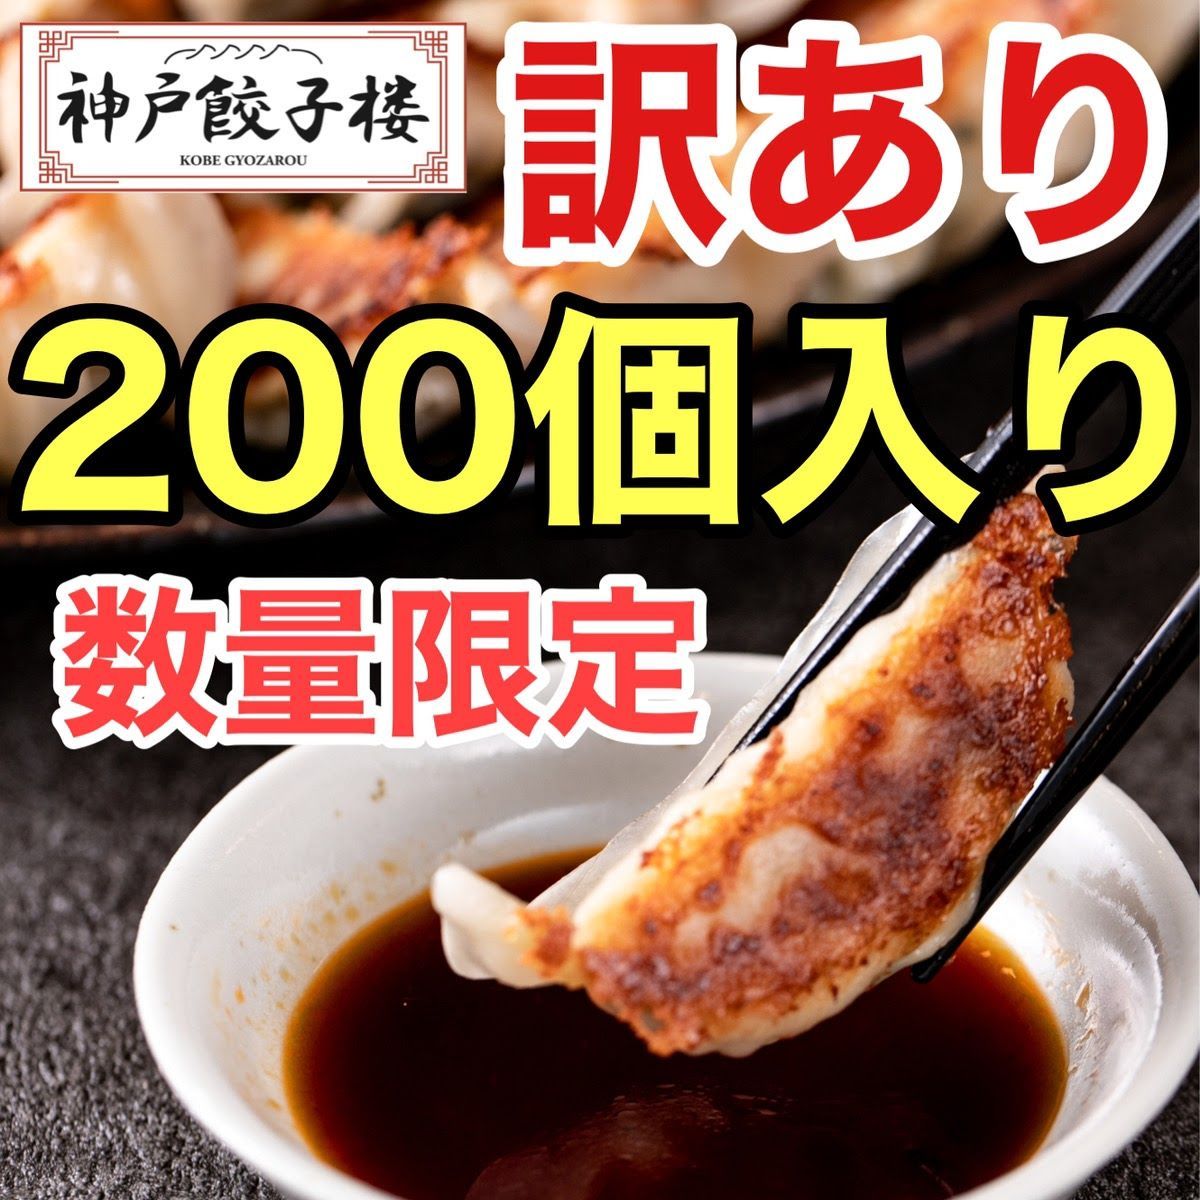 数量限定 訳あり 200個入 神戸餃子楼 工場直販 冷凍生餃子 生姜 鍋-0